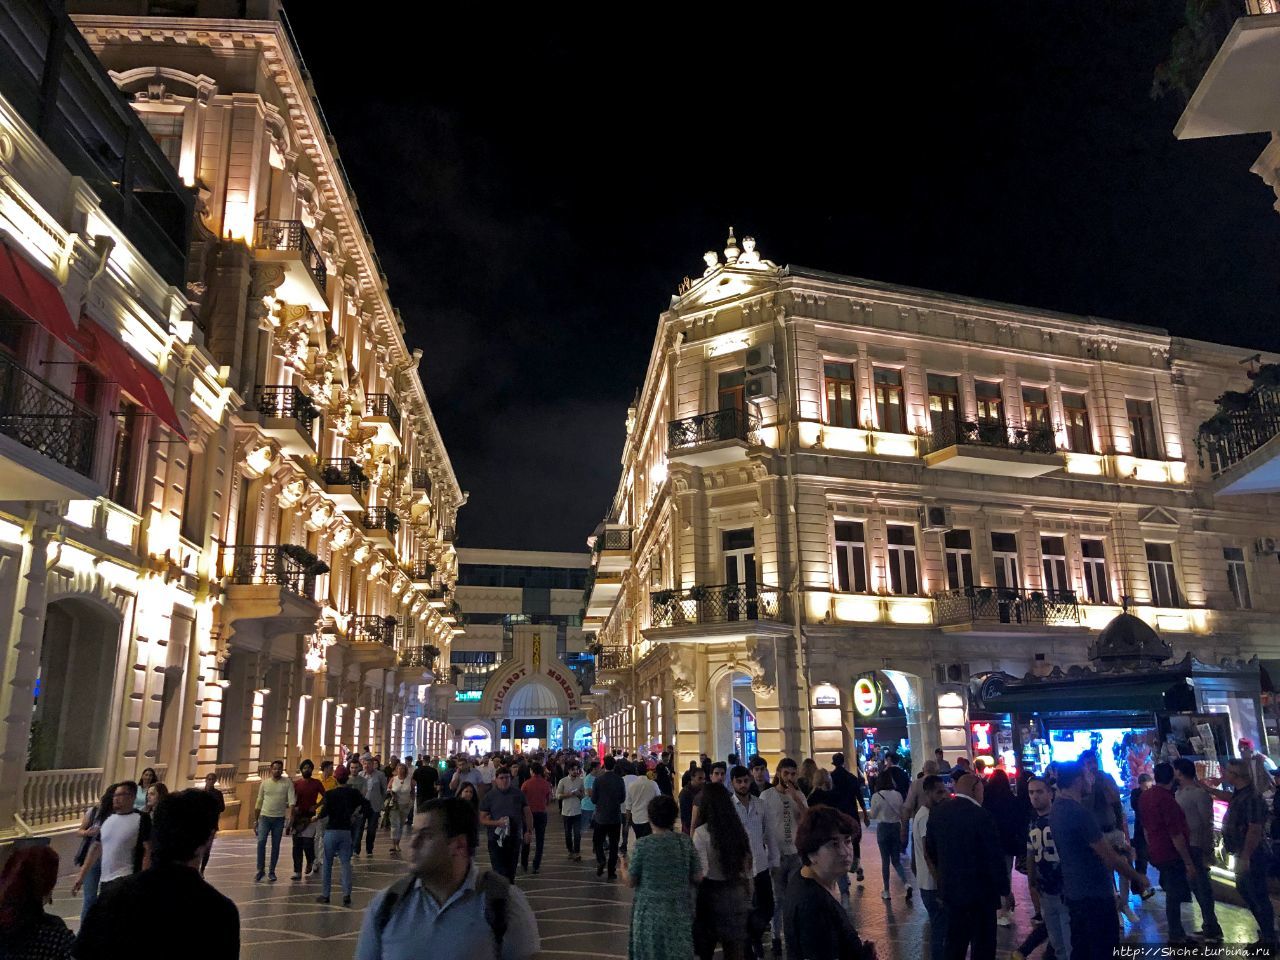 Ночные города... Первая прогулка по Баку Баку, Азербайджан